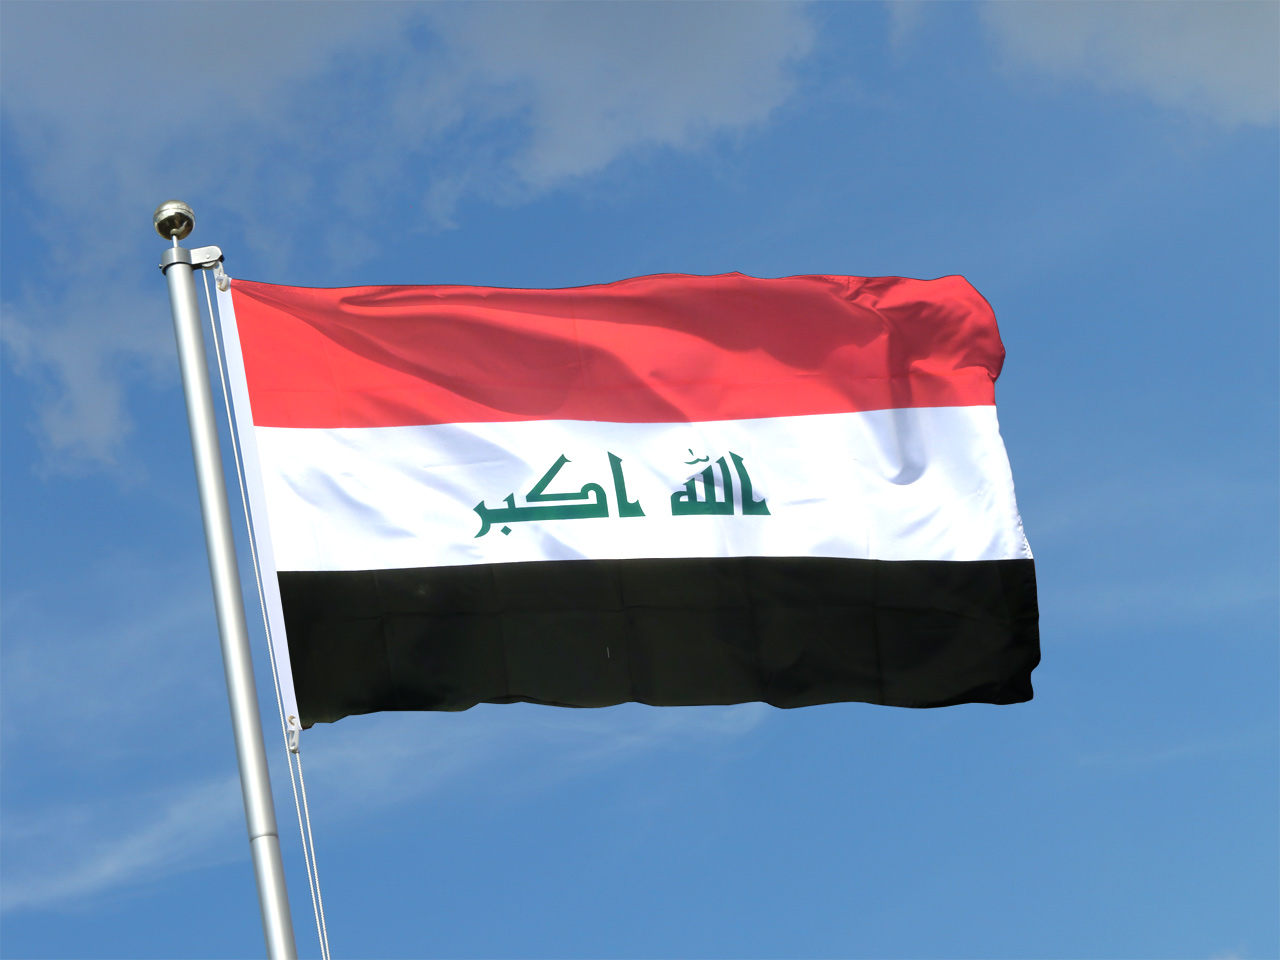 3 Terroristes ont été tués et un membre des forces de sécurité a été blessé lors d'affrontements au nord de Bagdad